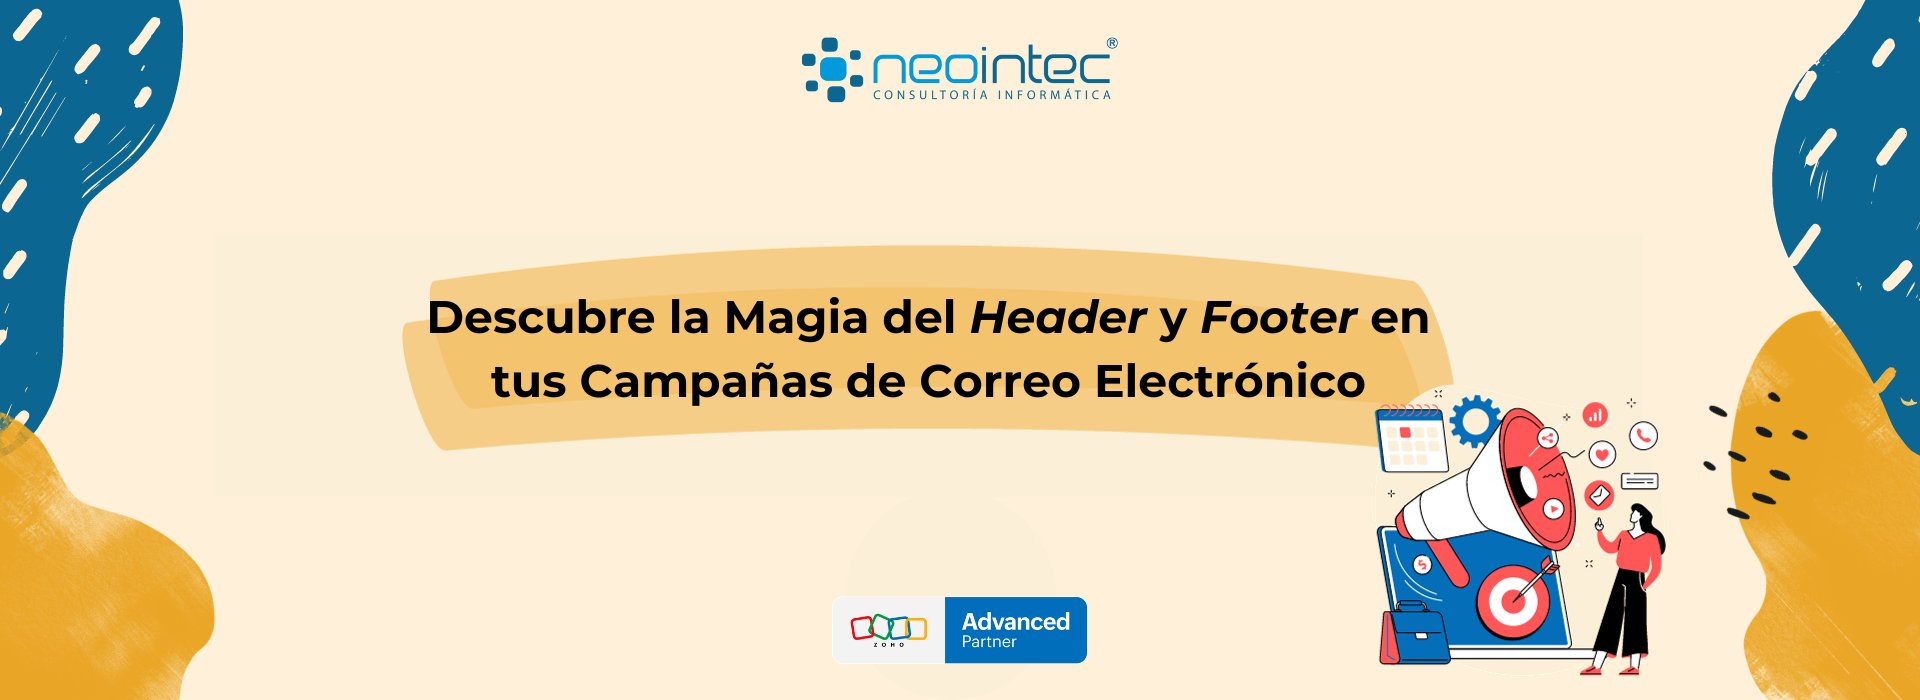 Descubre la Magia del Header y Footer en tus Campañas de Correo Electrónico  - Neointec